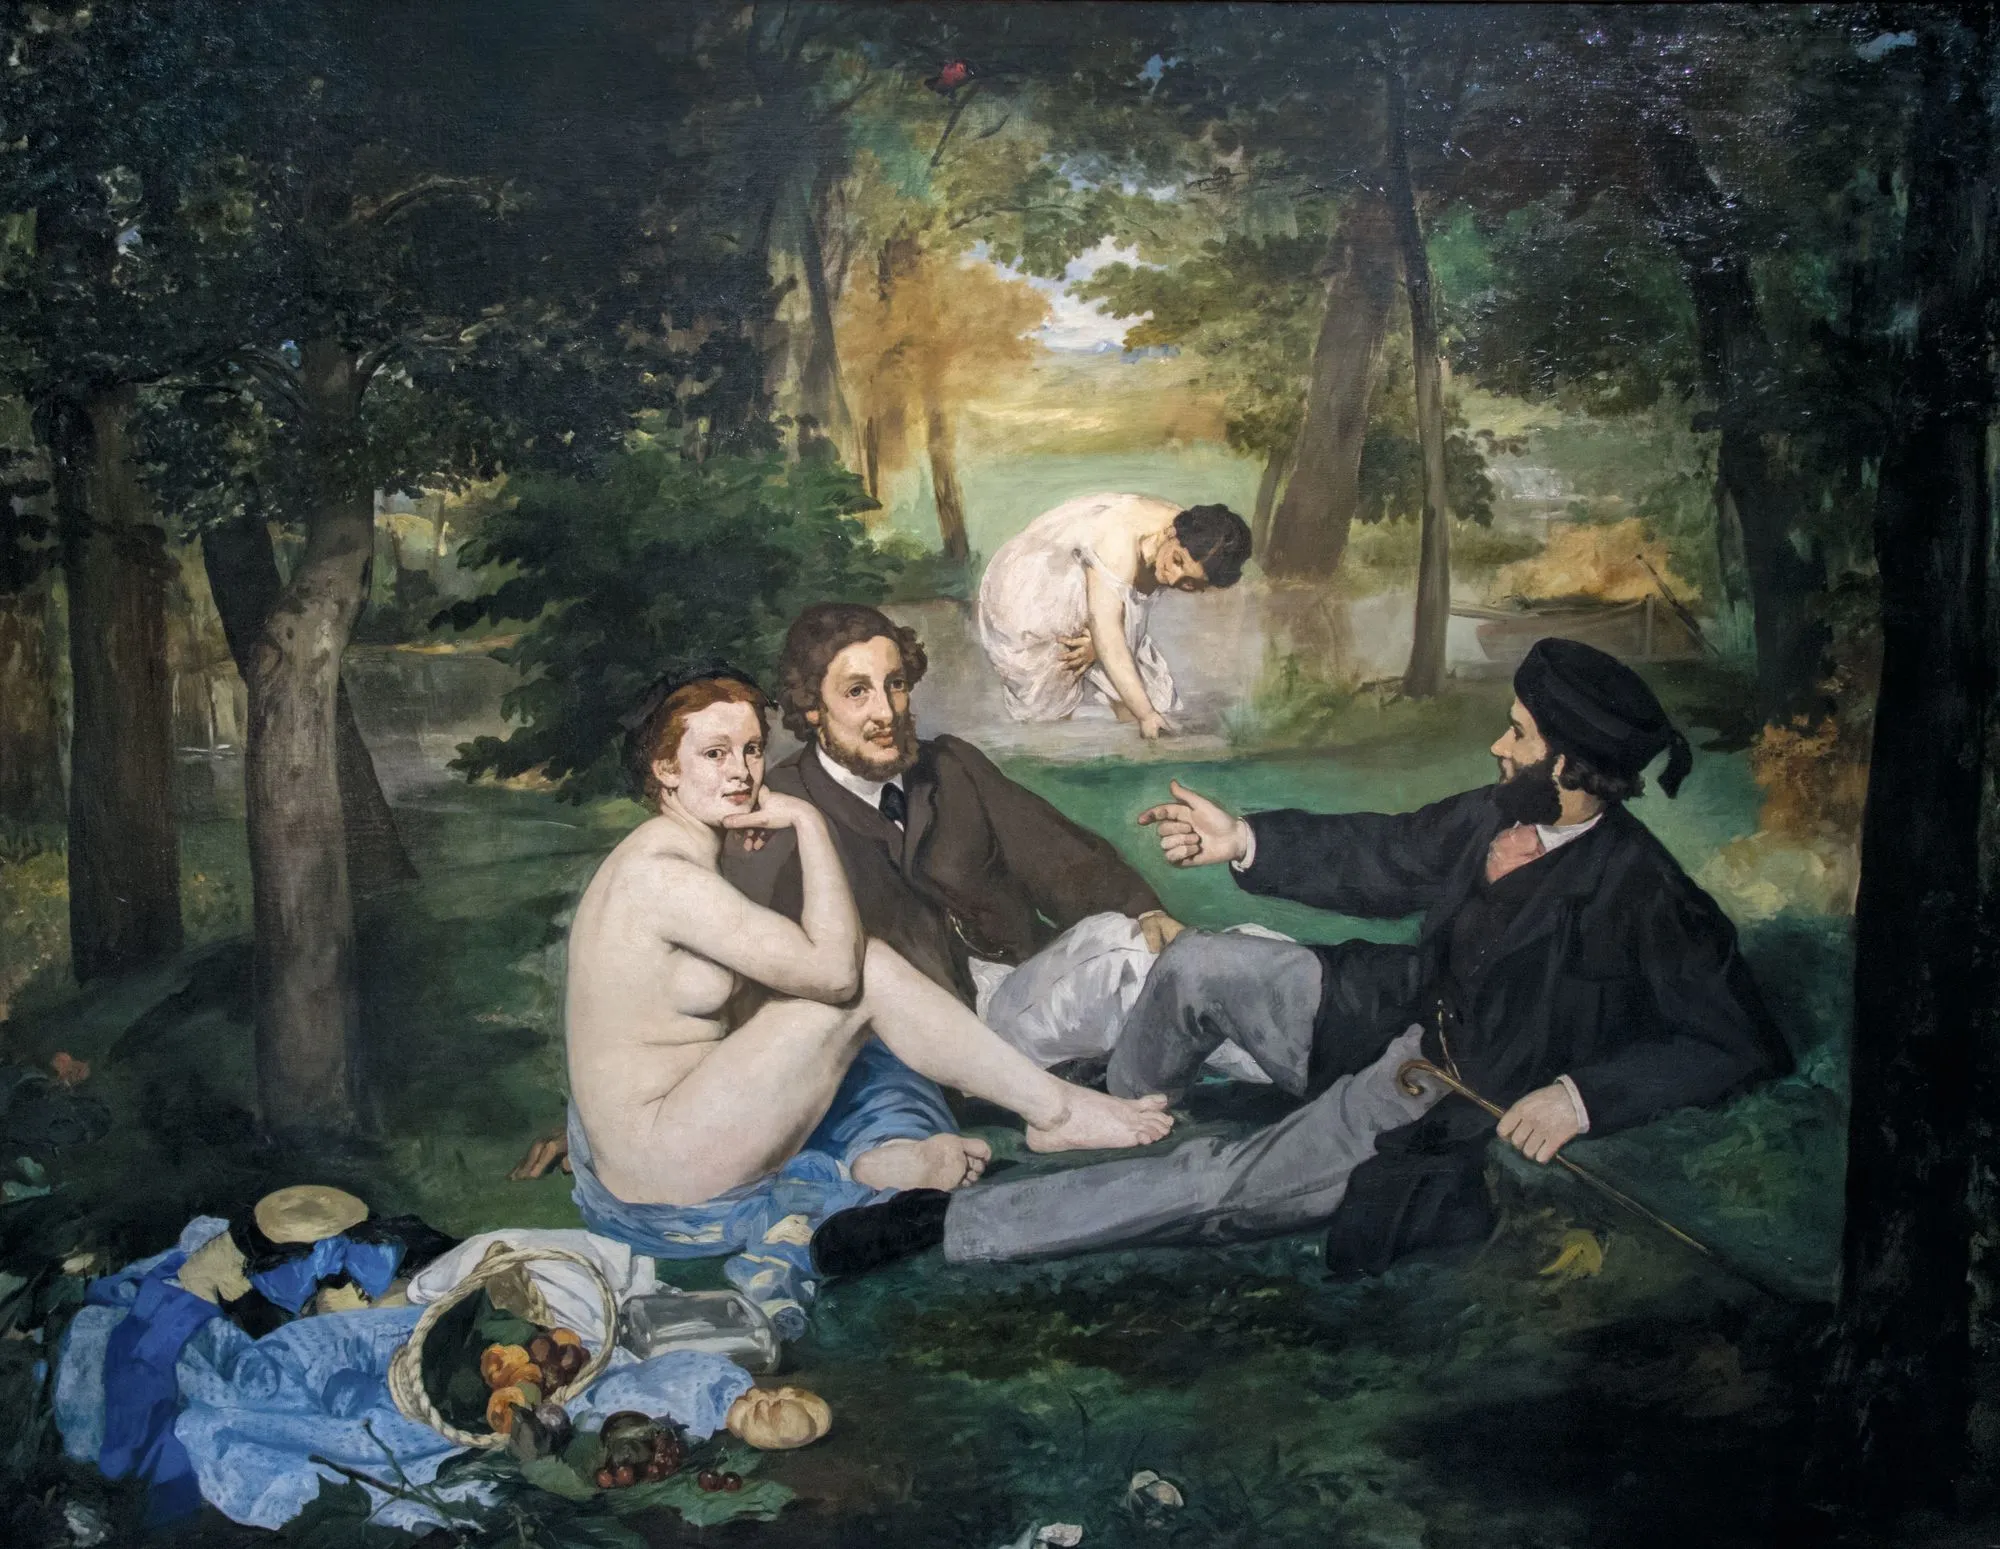 Édouard Manet, Le Déjeuner sur l'herbe, 1863